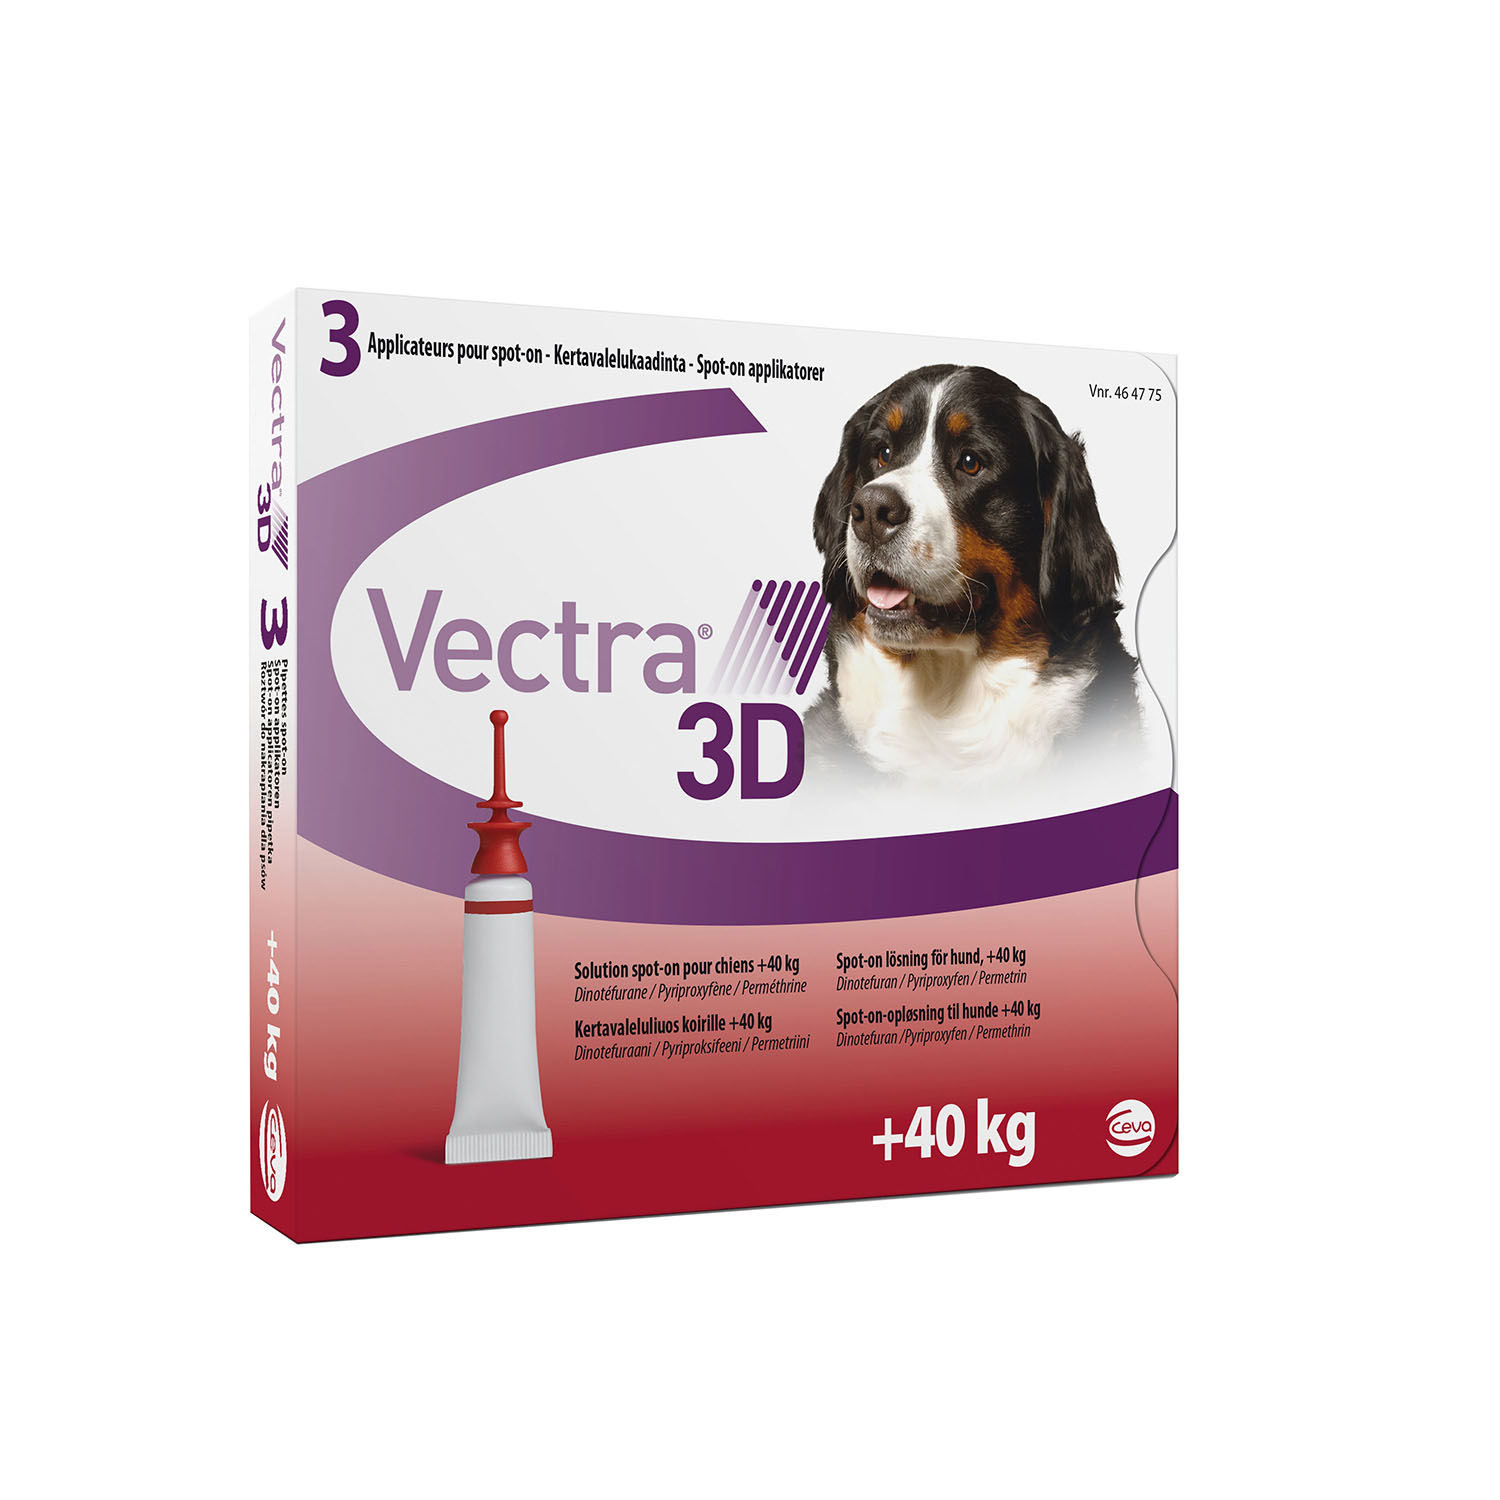 Vectra 3D капли от блох и клещей для собак весом от 40 кг до 65 кг